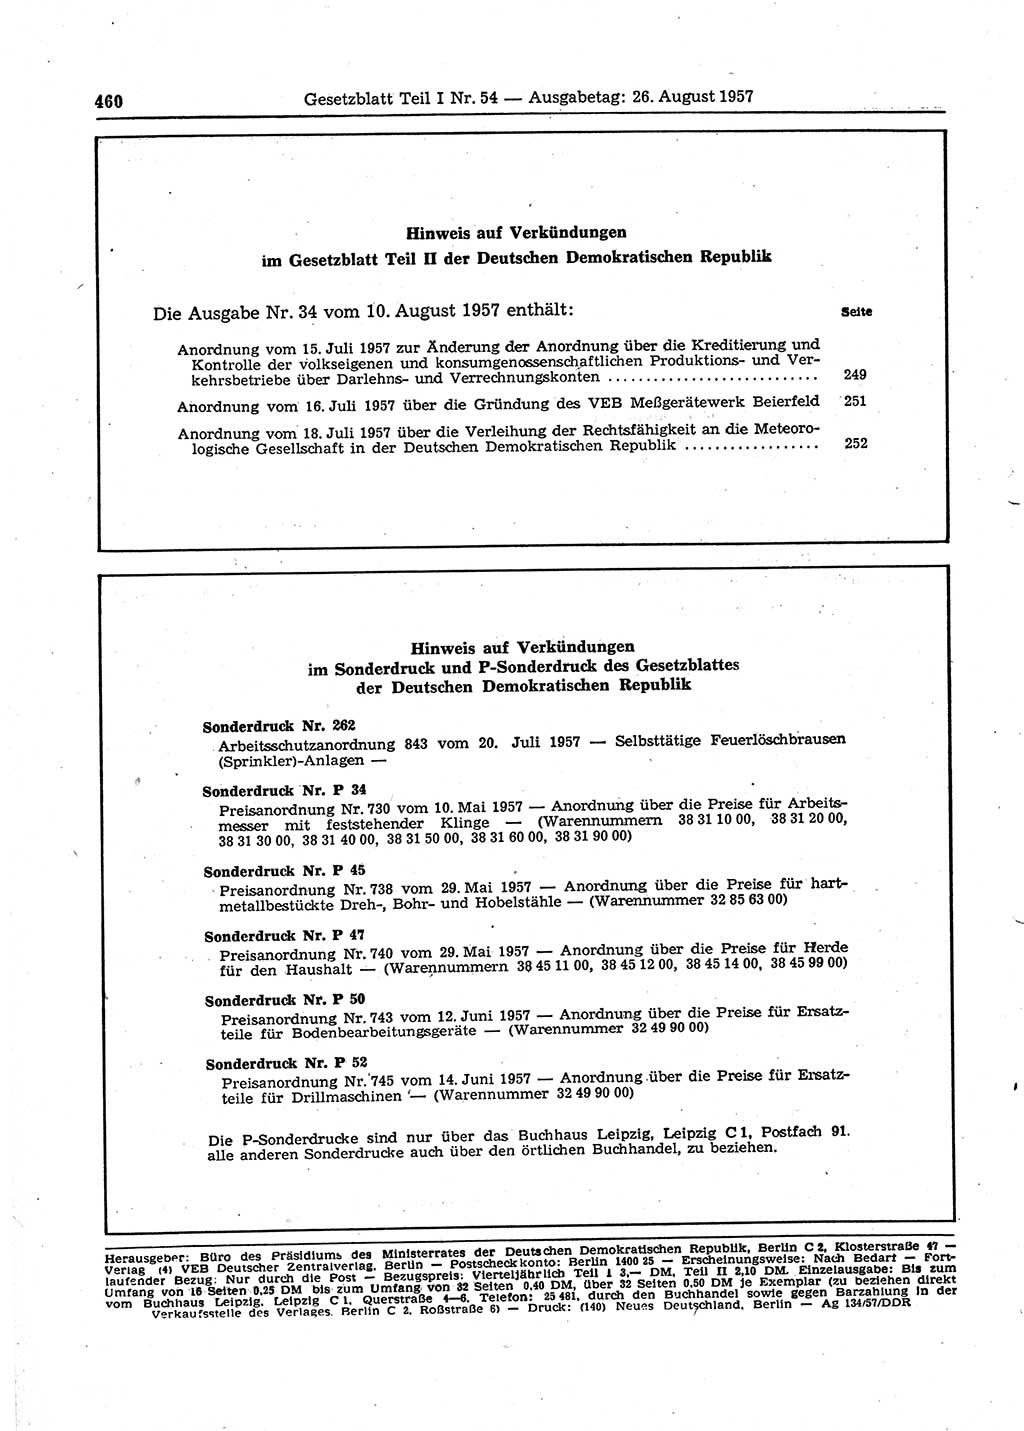 Gesetzblatt (GBl.) der Deutschen Demokratischen Republik (DDR) Teil Ⅰ 1957, Seite 460 (GBl. DDR Ⅰ 1957, S. 460)